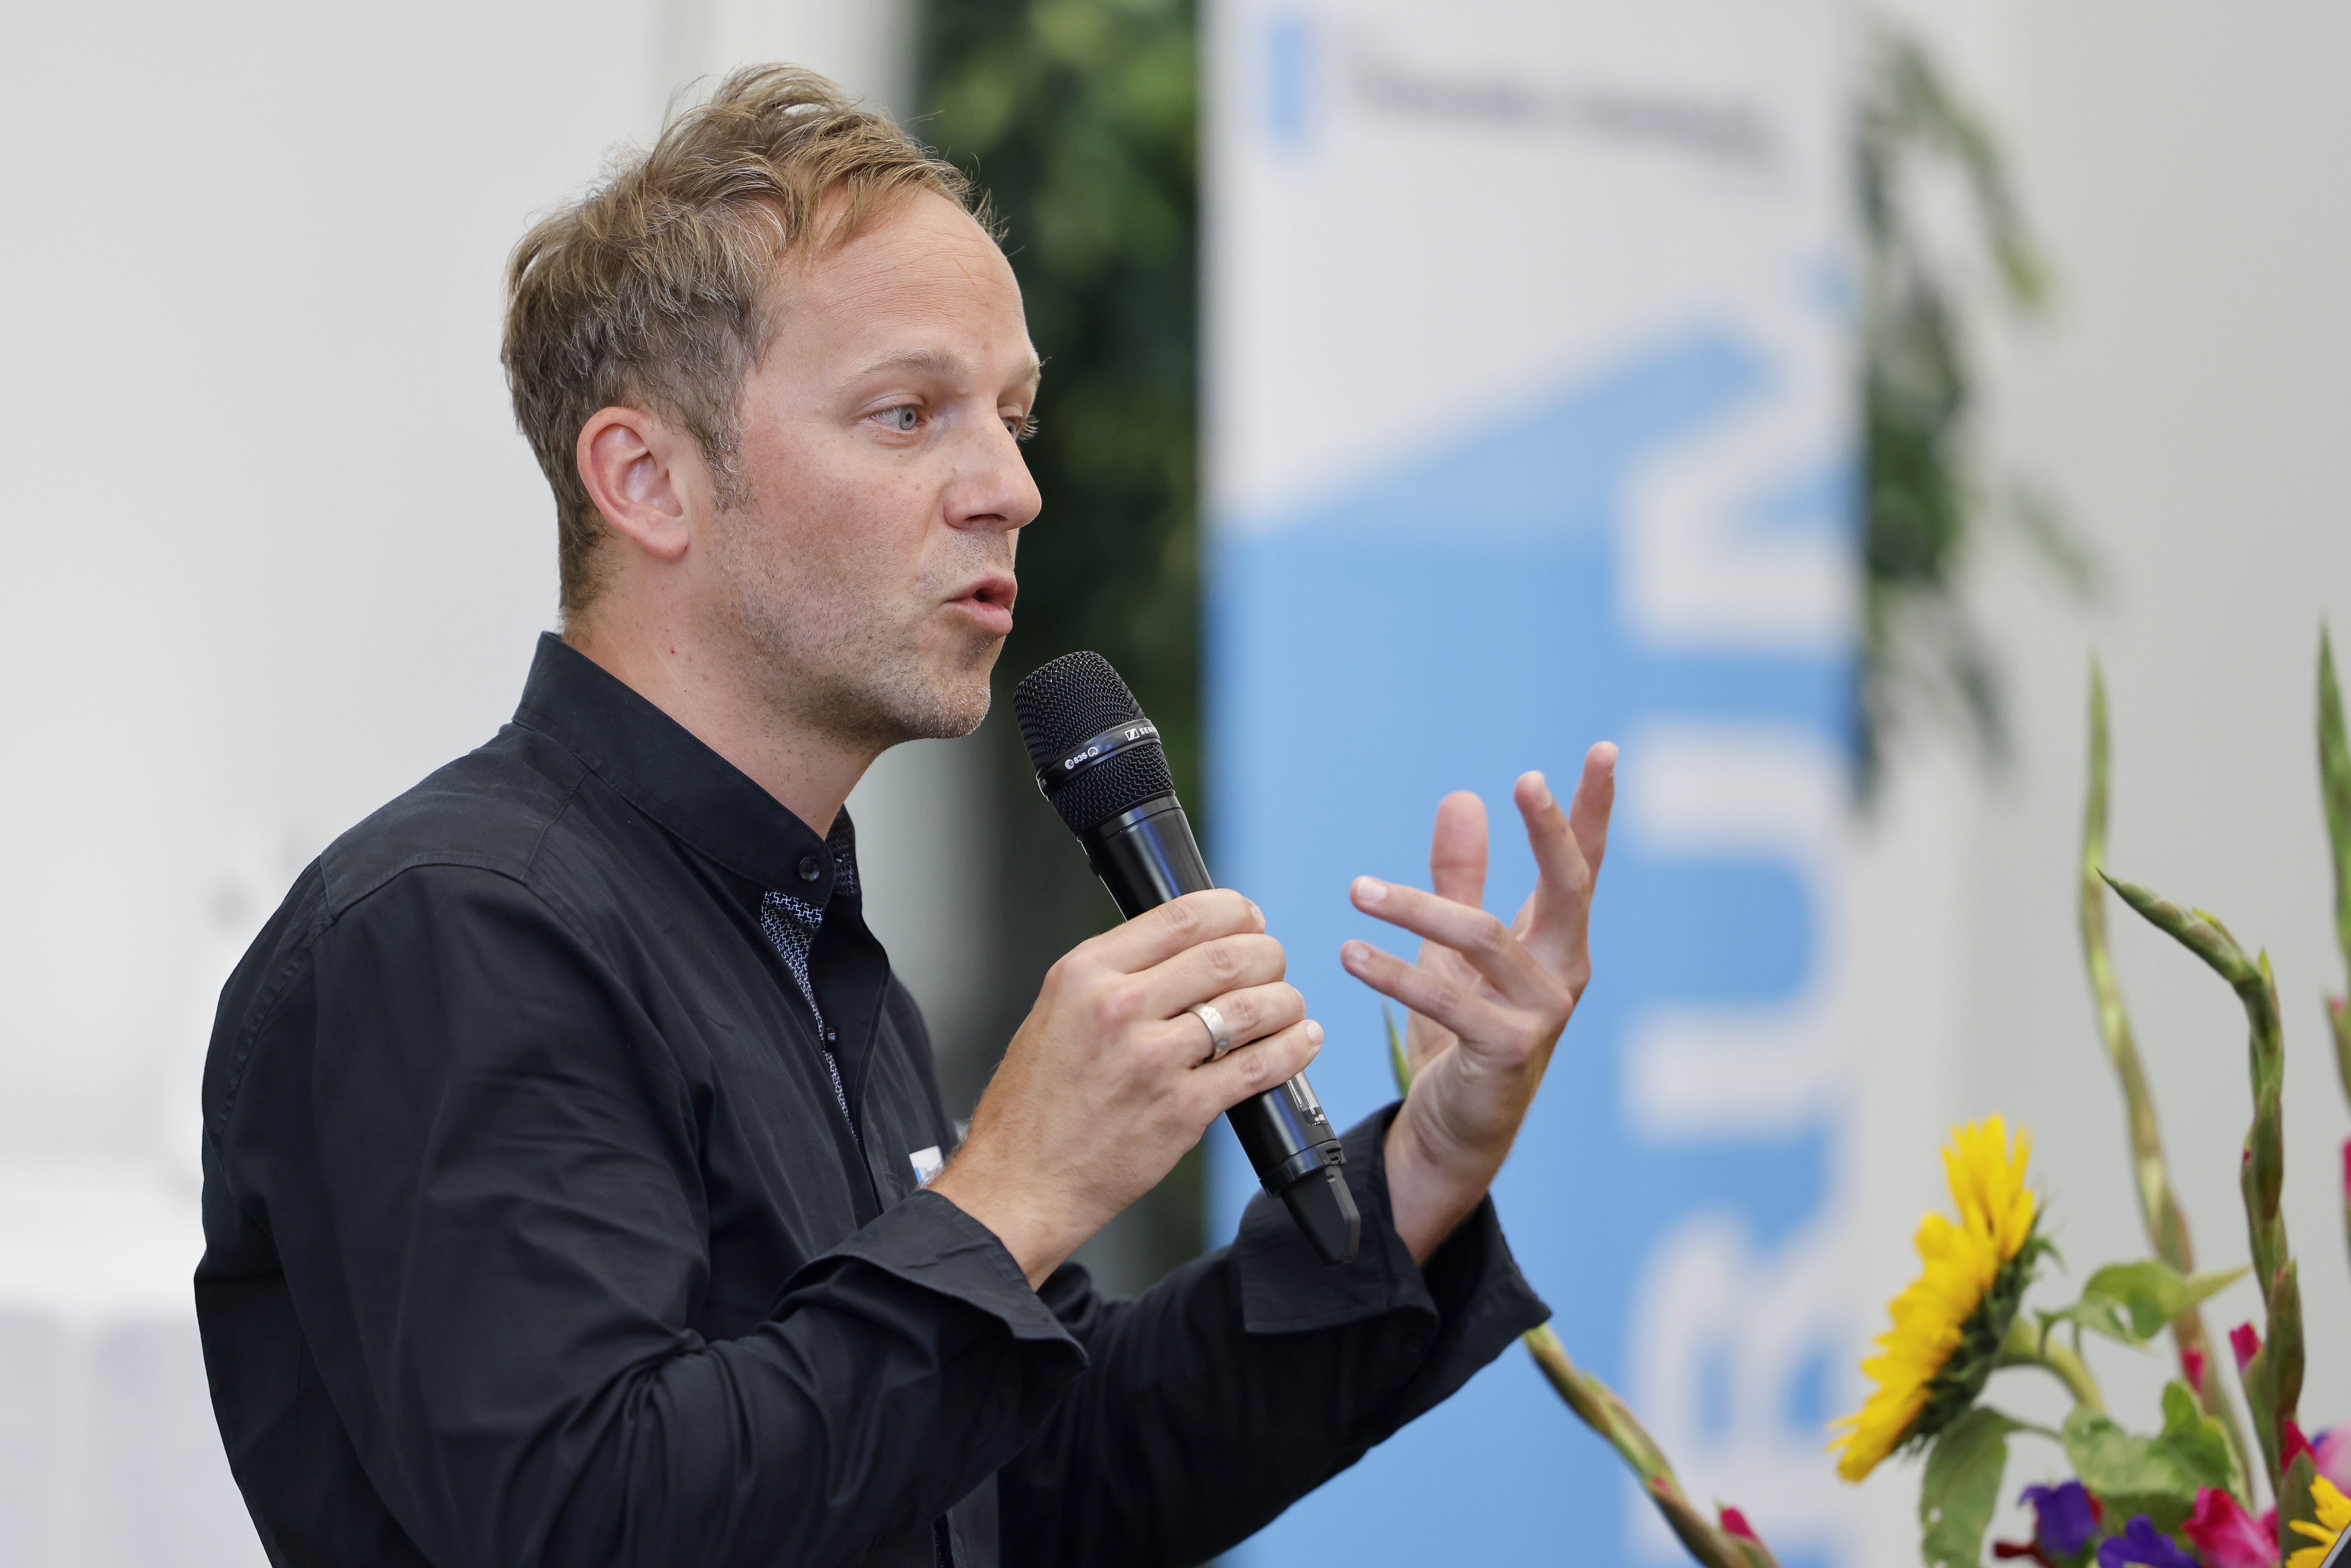 Der Referent Philipp Moll steht hinter einem Rednerpult und spricht in ein Handmikrofon. Mit der linken Hand gestikuliert er, im Hintergrund sind ein Blumenstrauss und ein Banner mit dem blauweissen Forumslogo zu erkennen.